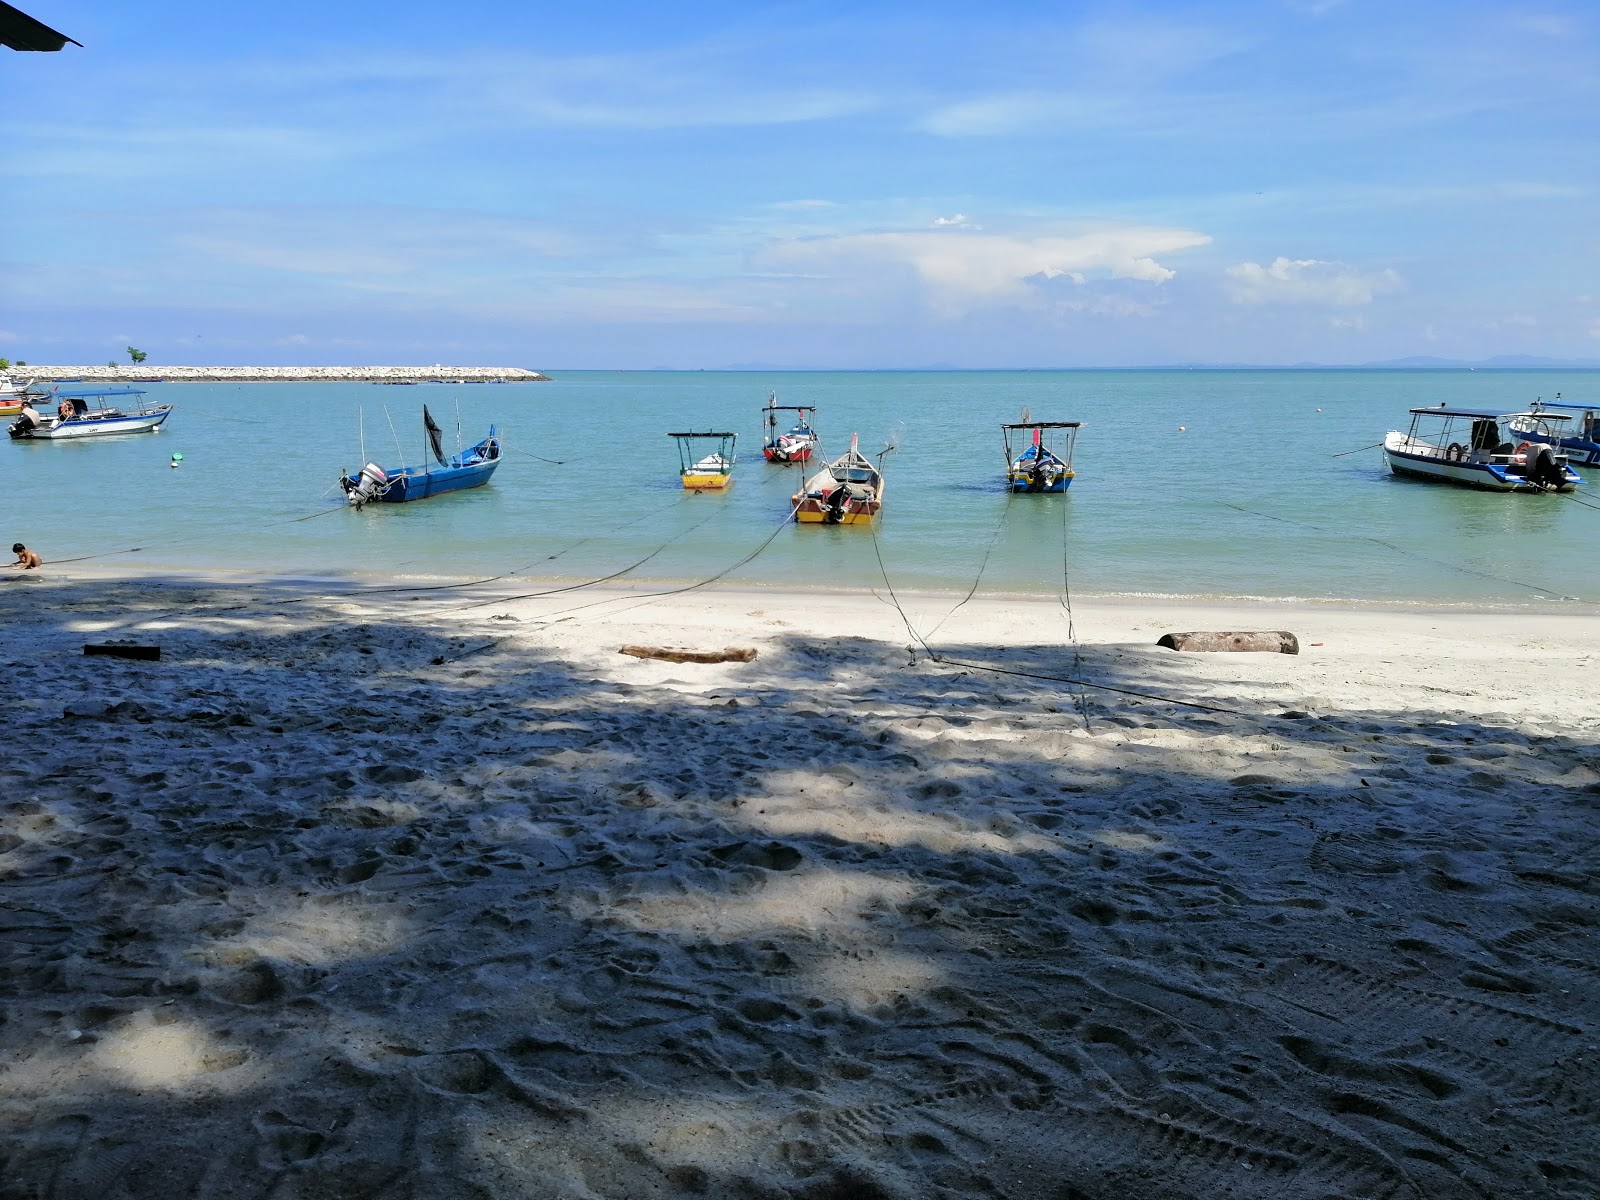 Tanjung Tokong Beach'in fotoğrafı geniş ile birlikte